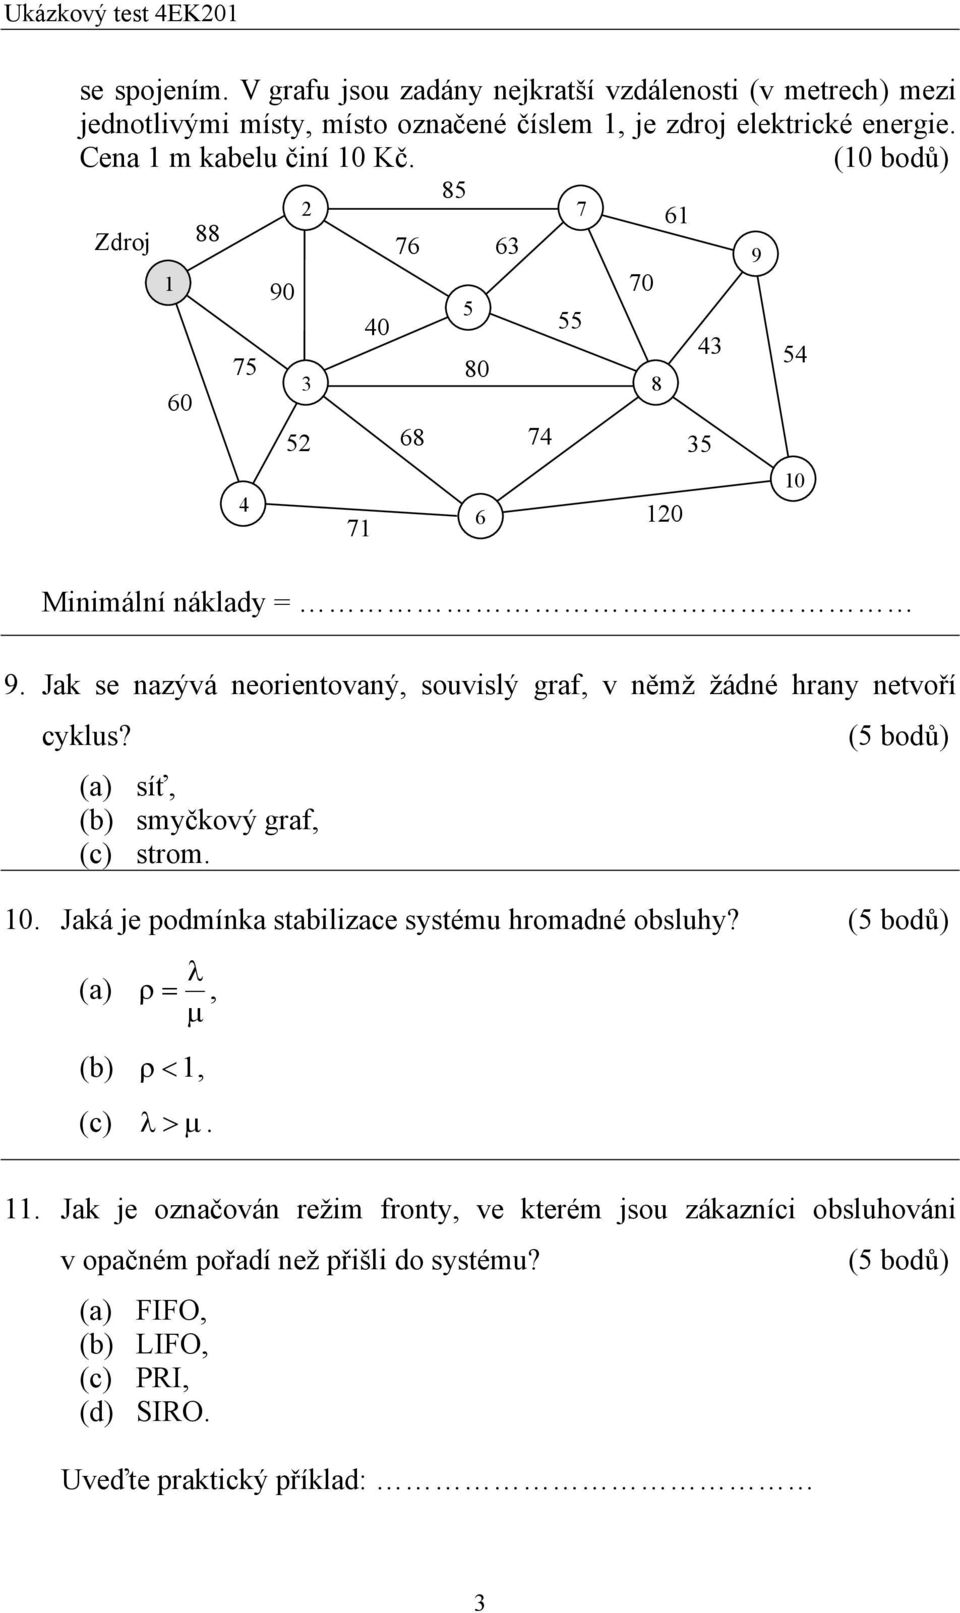 Jak se nazývá neorientovaný, souvislý graf, v němž žádné hrany netvoří cyklus? (a) síť, (b) smyčkový graf, (c) strom. 0.